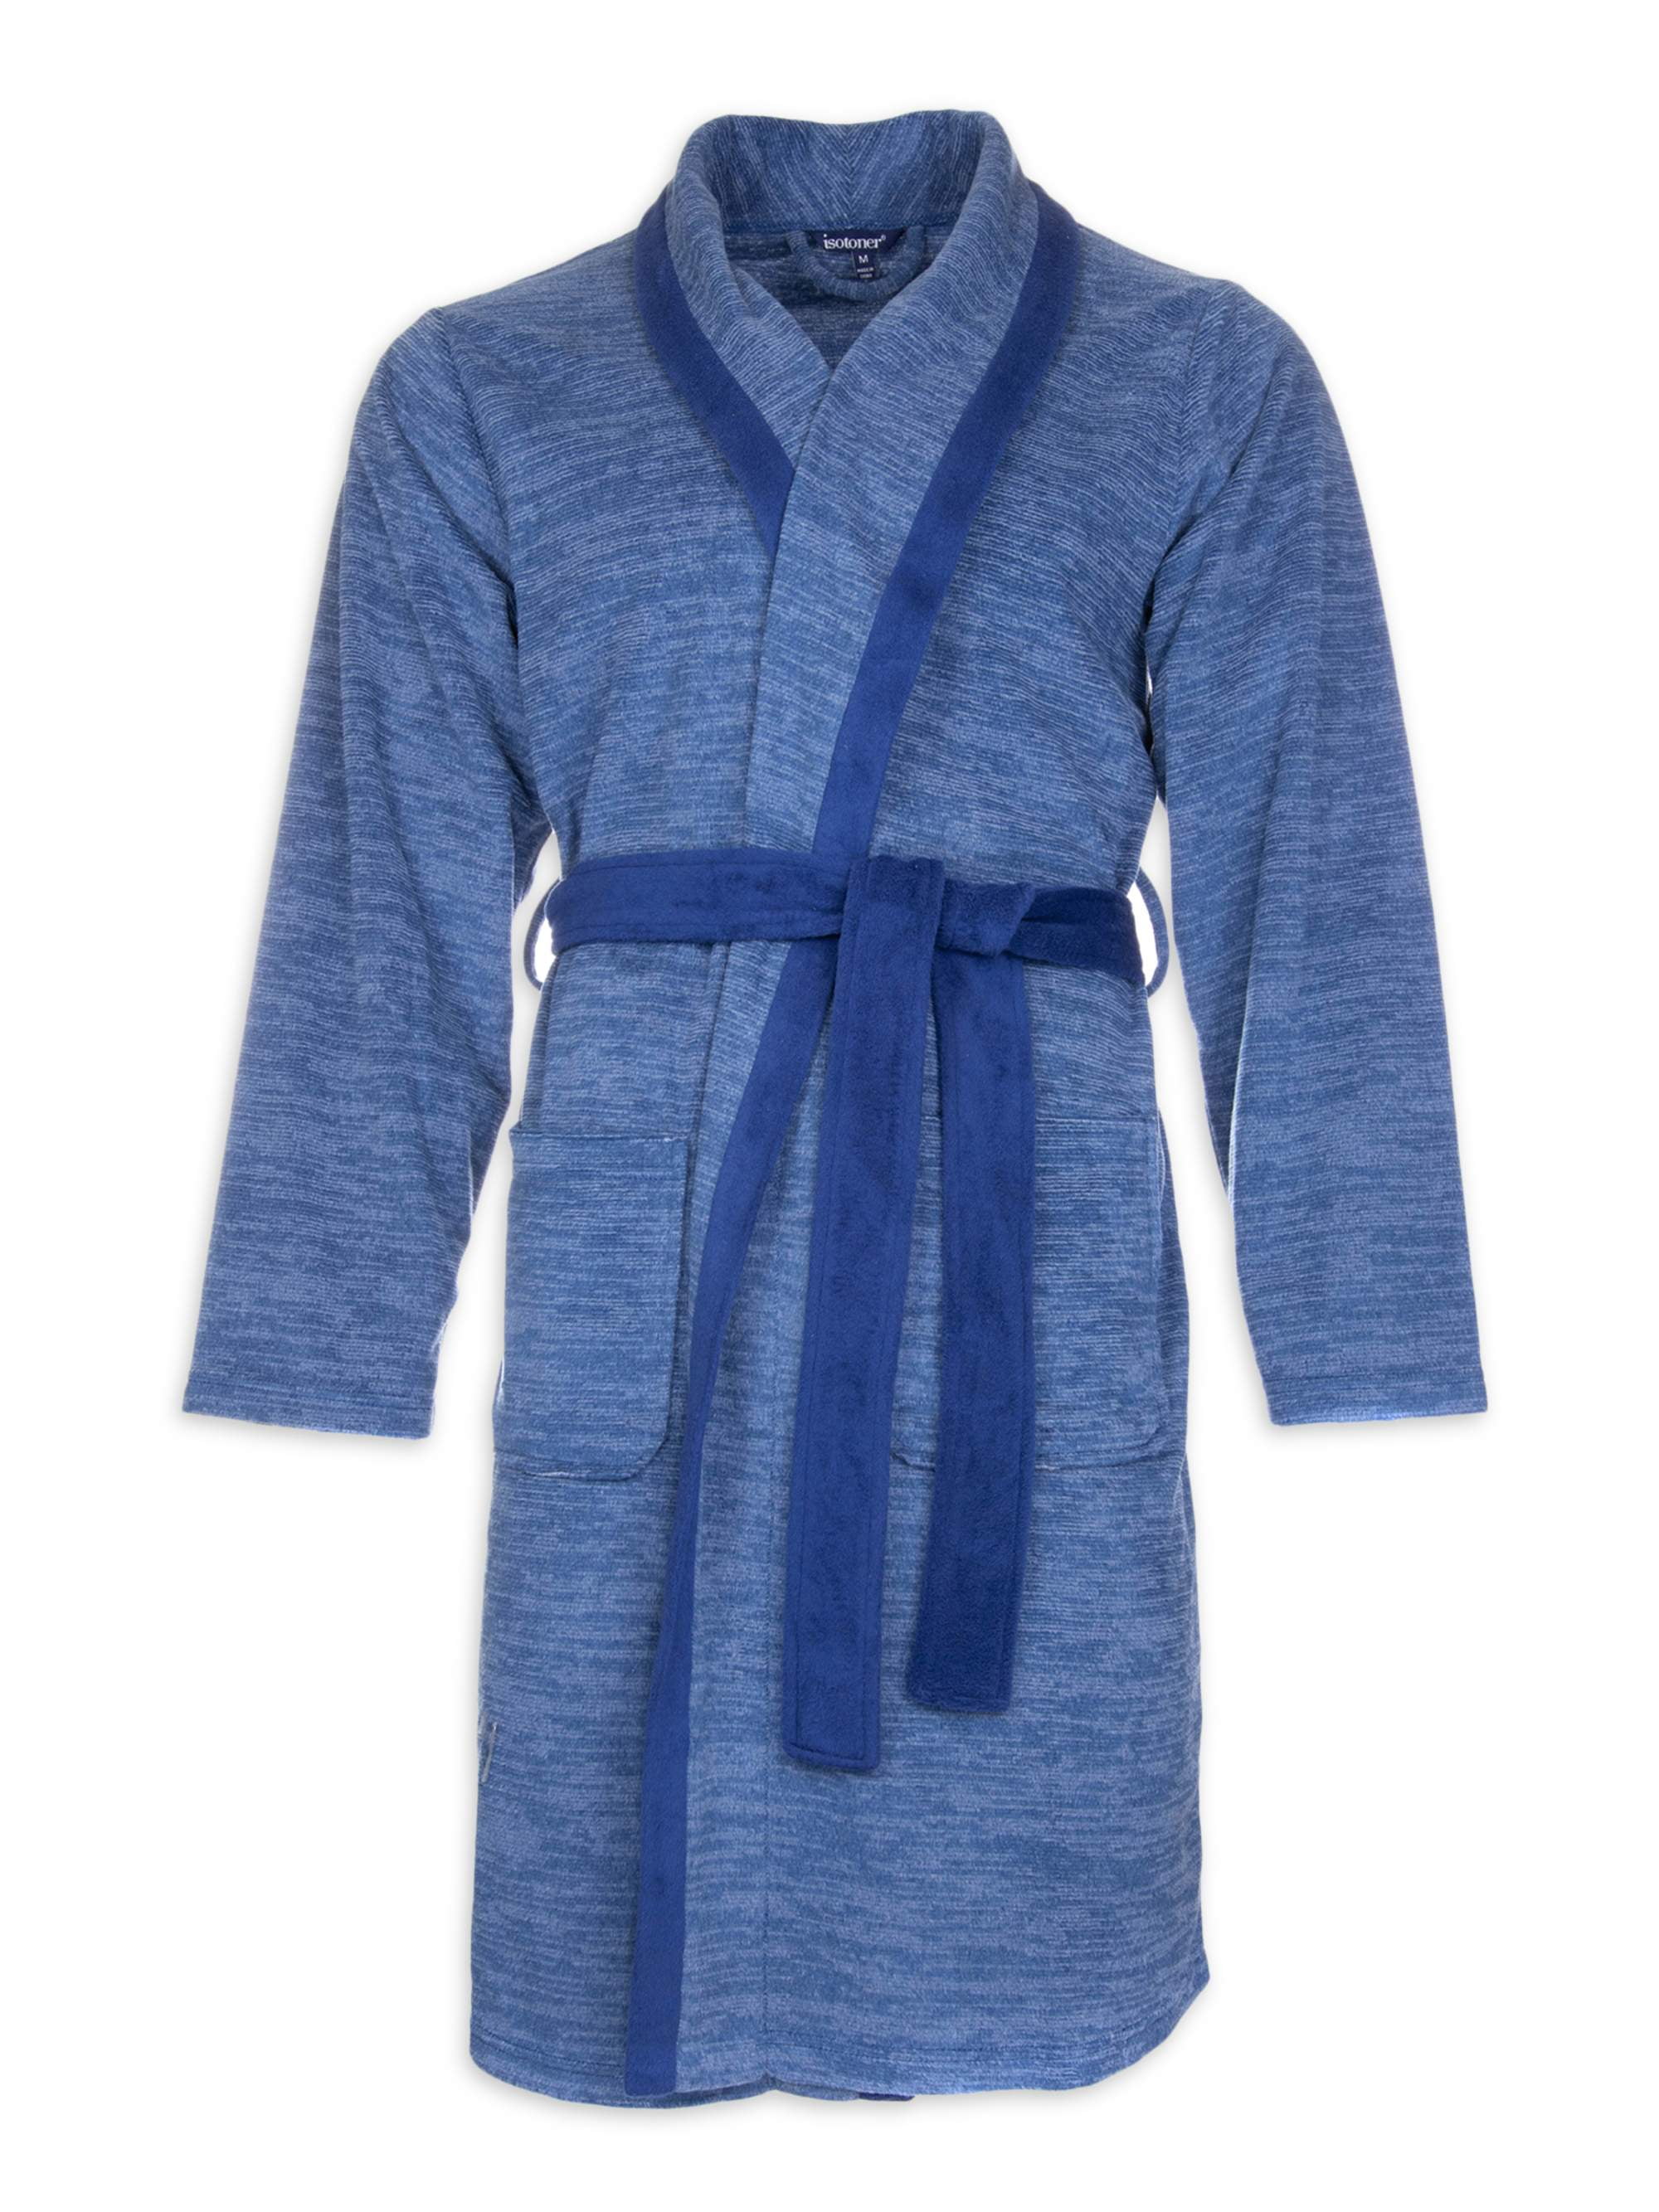 FLYCHEN Girls Hooded Robe Bath Spa Fleece Loungewear Nightgown